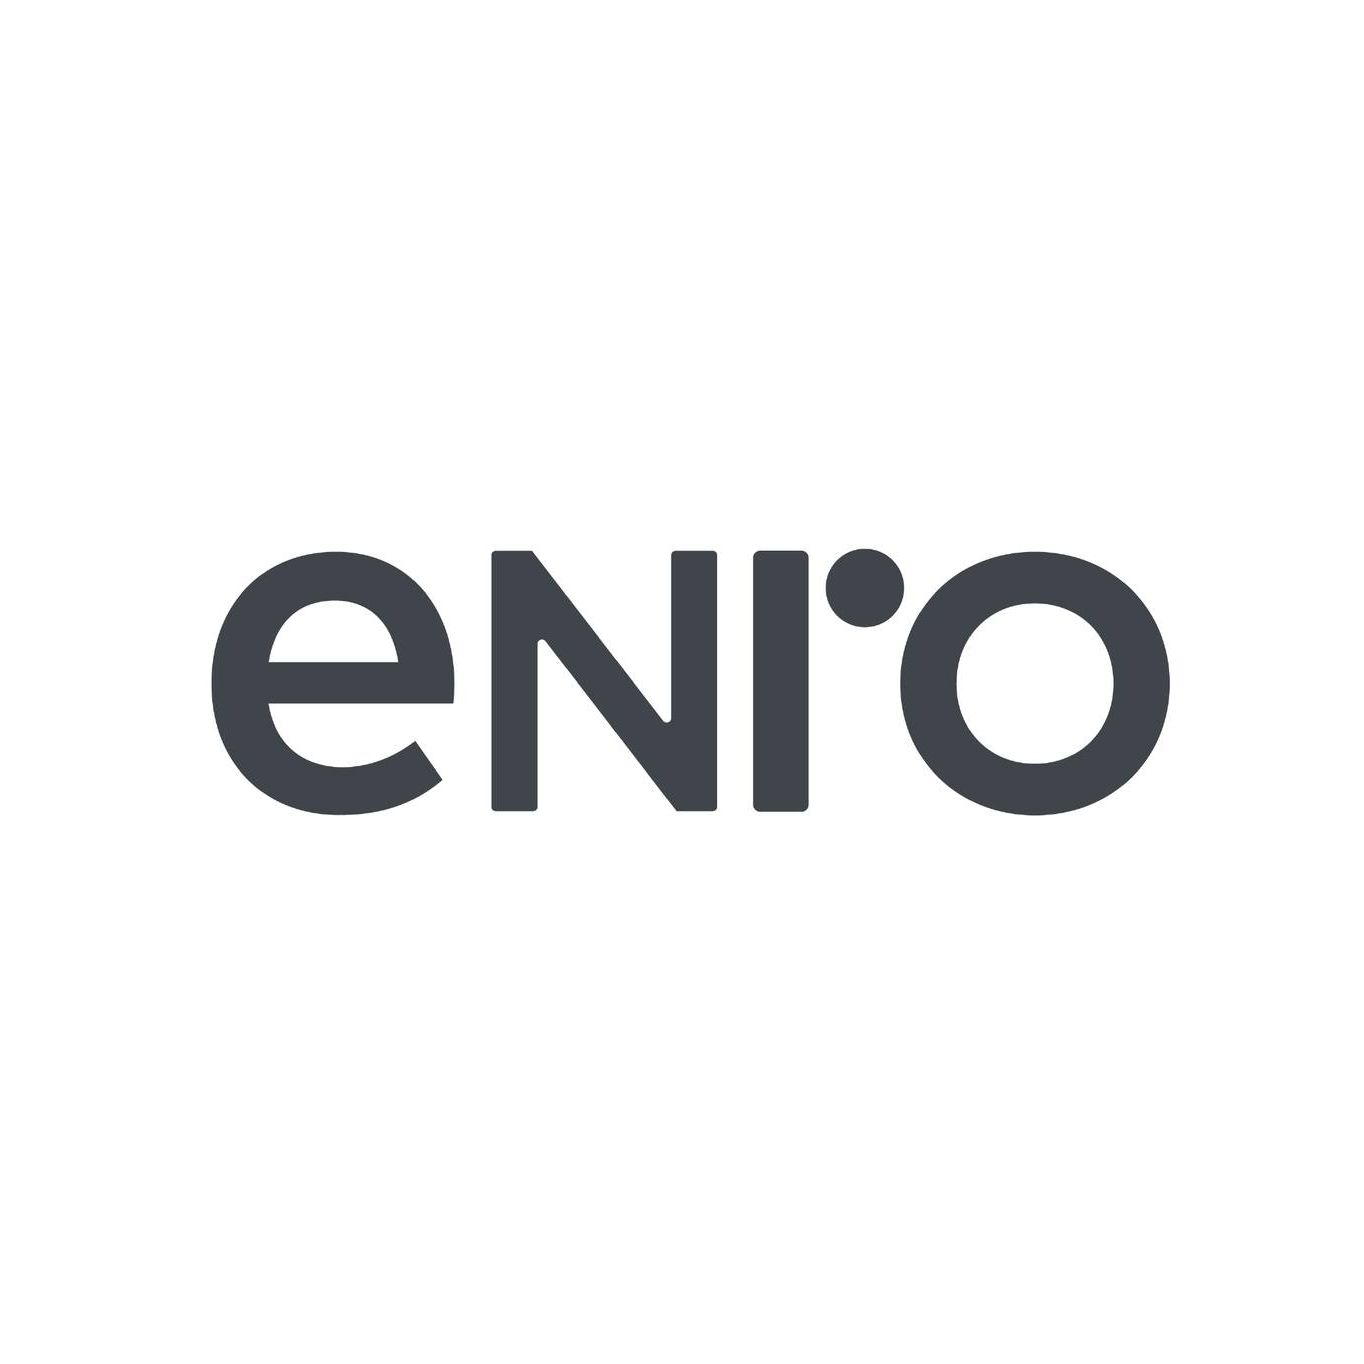 Enro